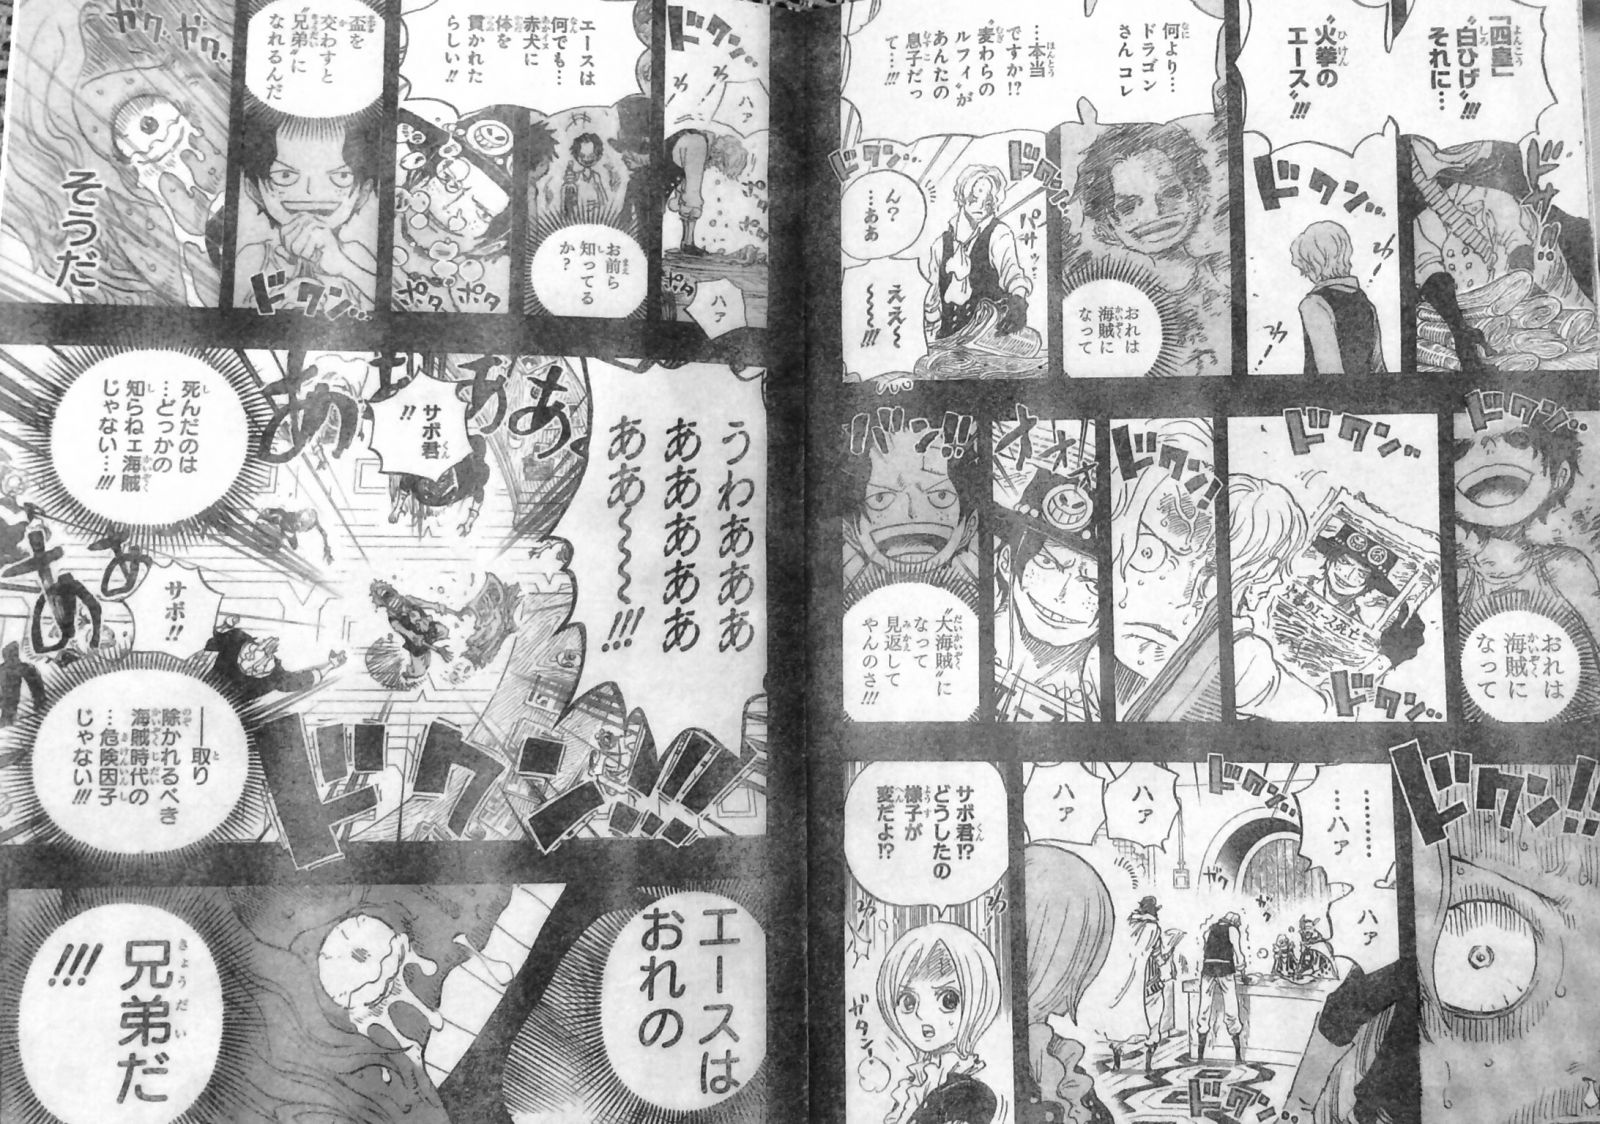 第794話 サボの冒険 記憶失っていたサボ エースの死で記憶蘇る メラメラの実経緯 トリトリの実 One Piece ワンピース 道場 アニメ 漫画 まにあ道 趣味と遊びを極めるサイト